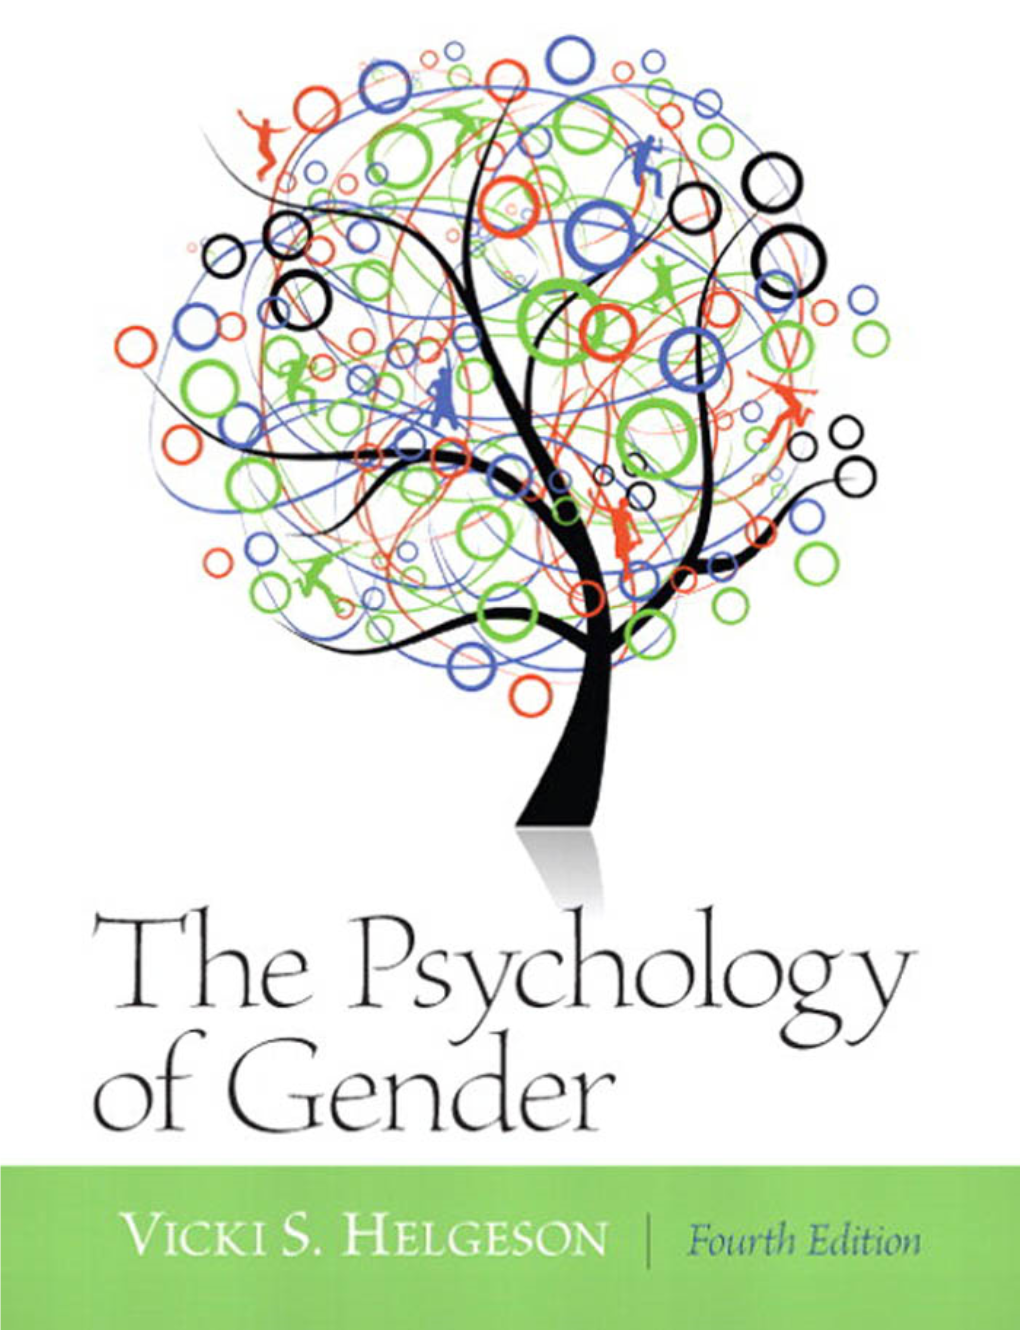 The Psychology of Gender / Vicki S